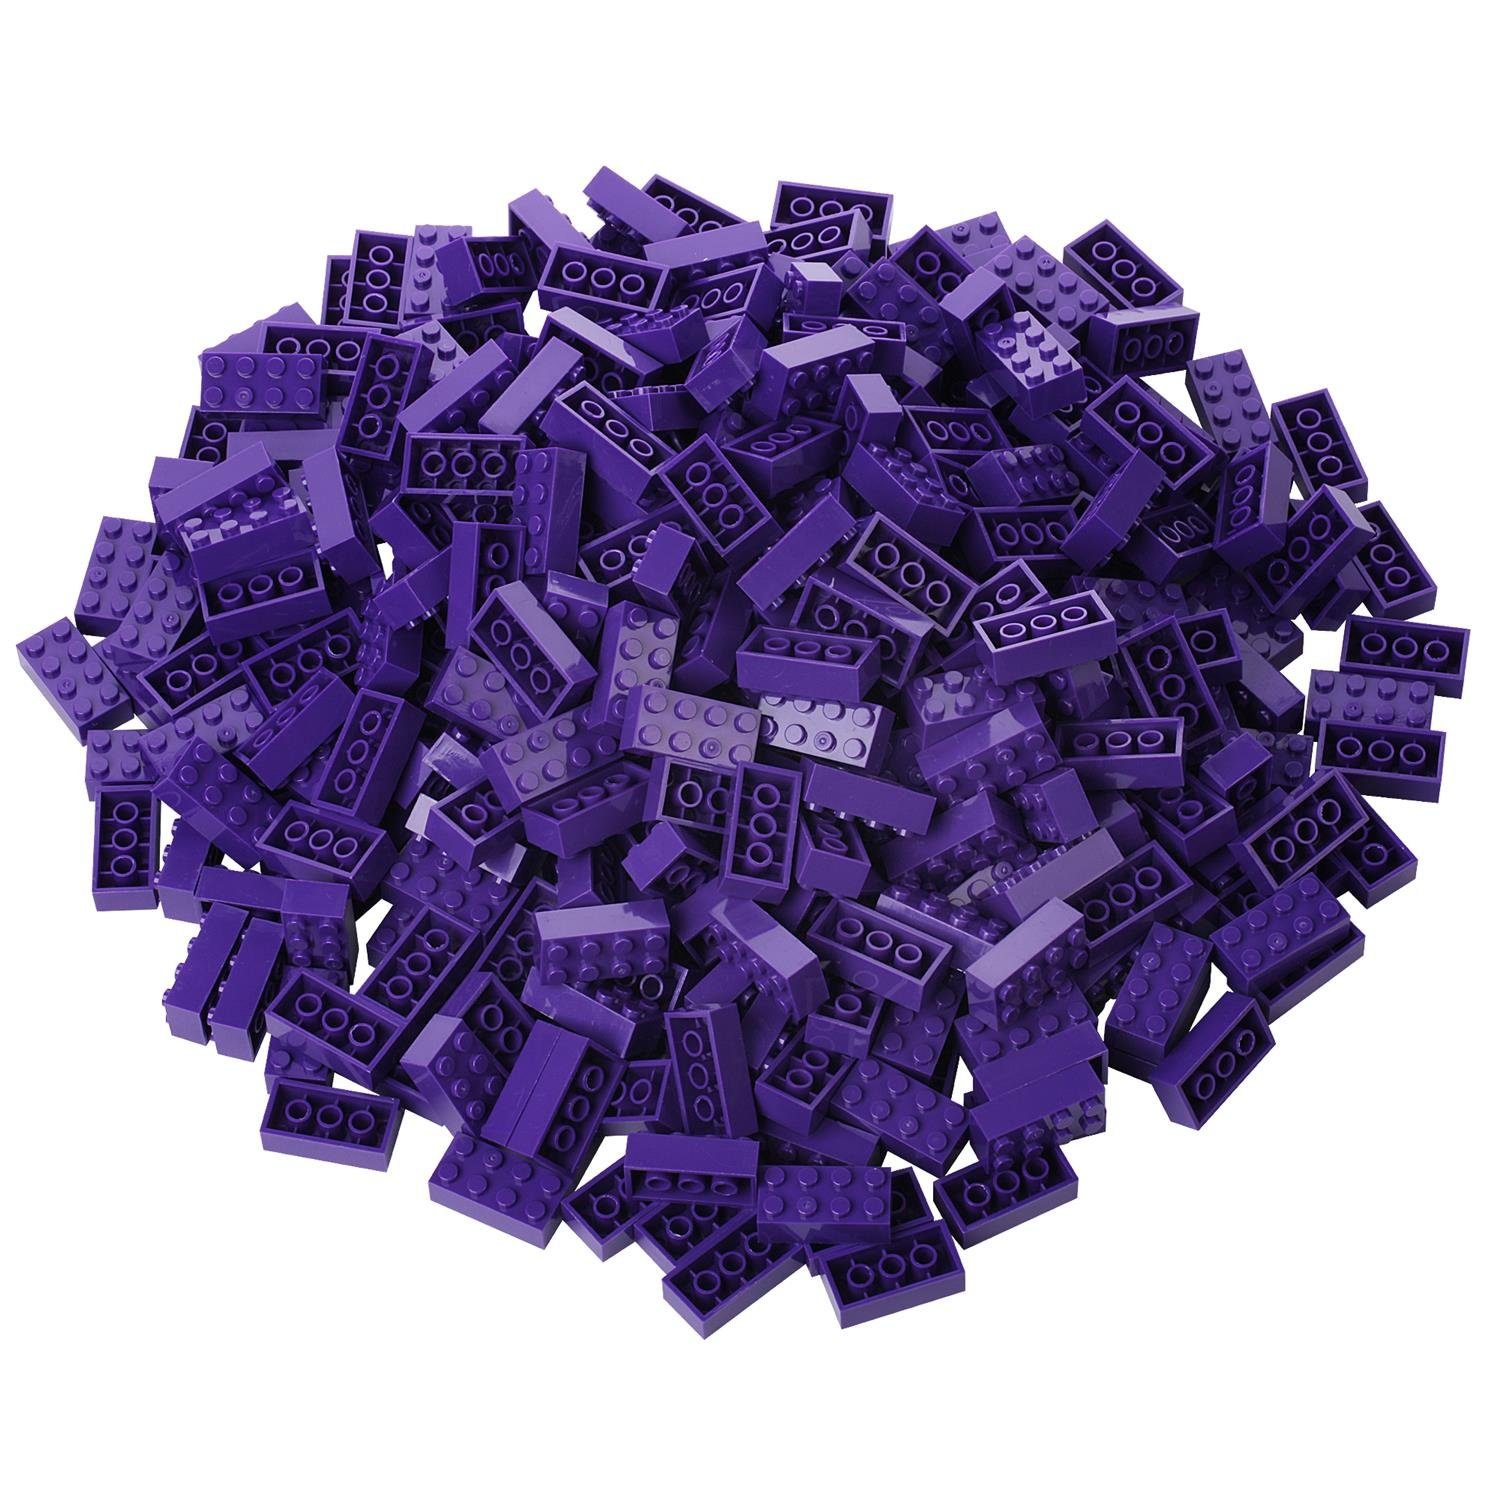 (3er Katara Box-Set zu Set), Bausteine Box, verschiedene lila mit 520 Herstellern allen Steinen Anderen - Konstruktionsspielsteine + Platte Kompatibel Farben +